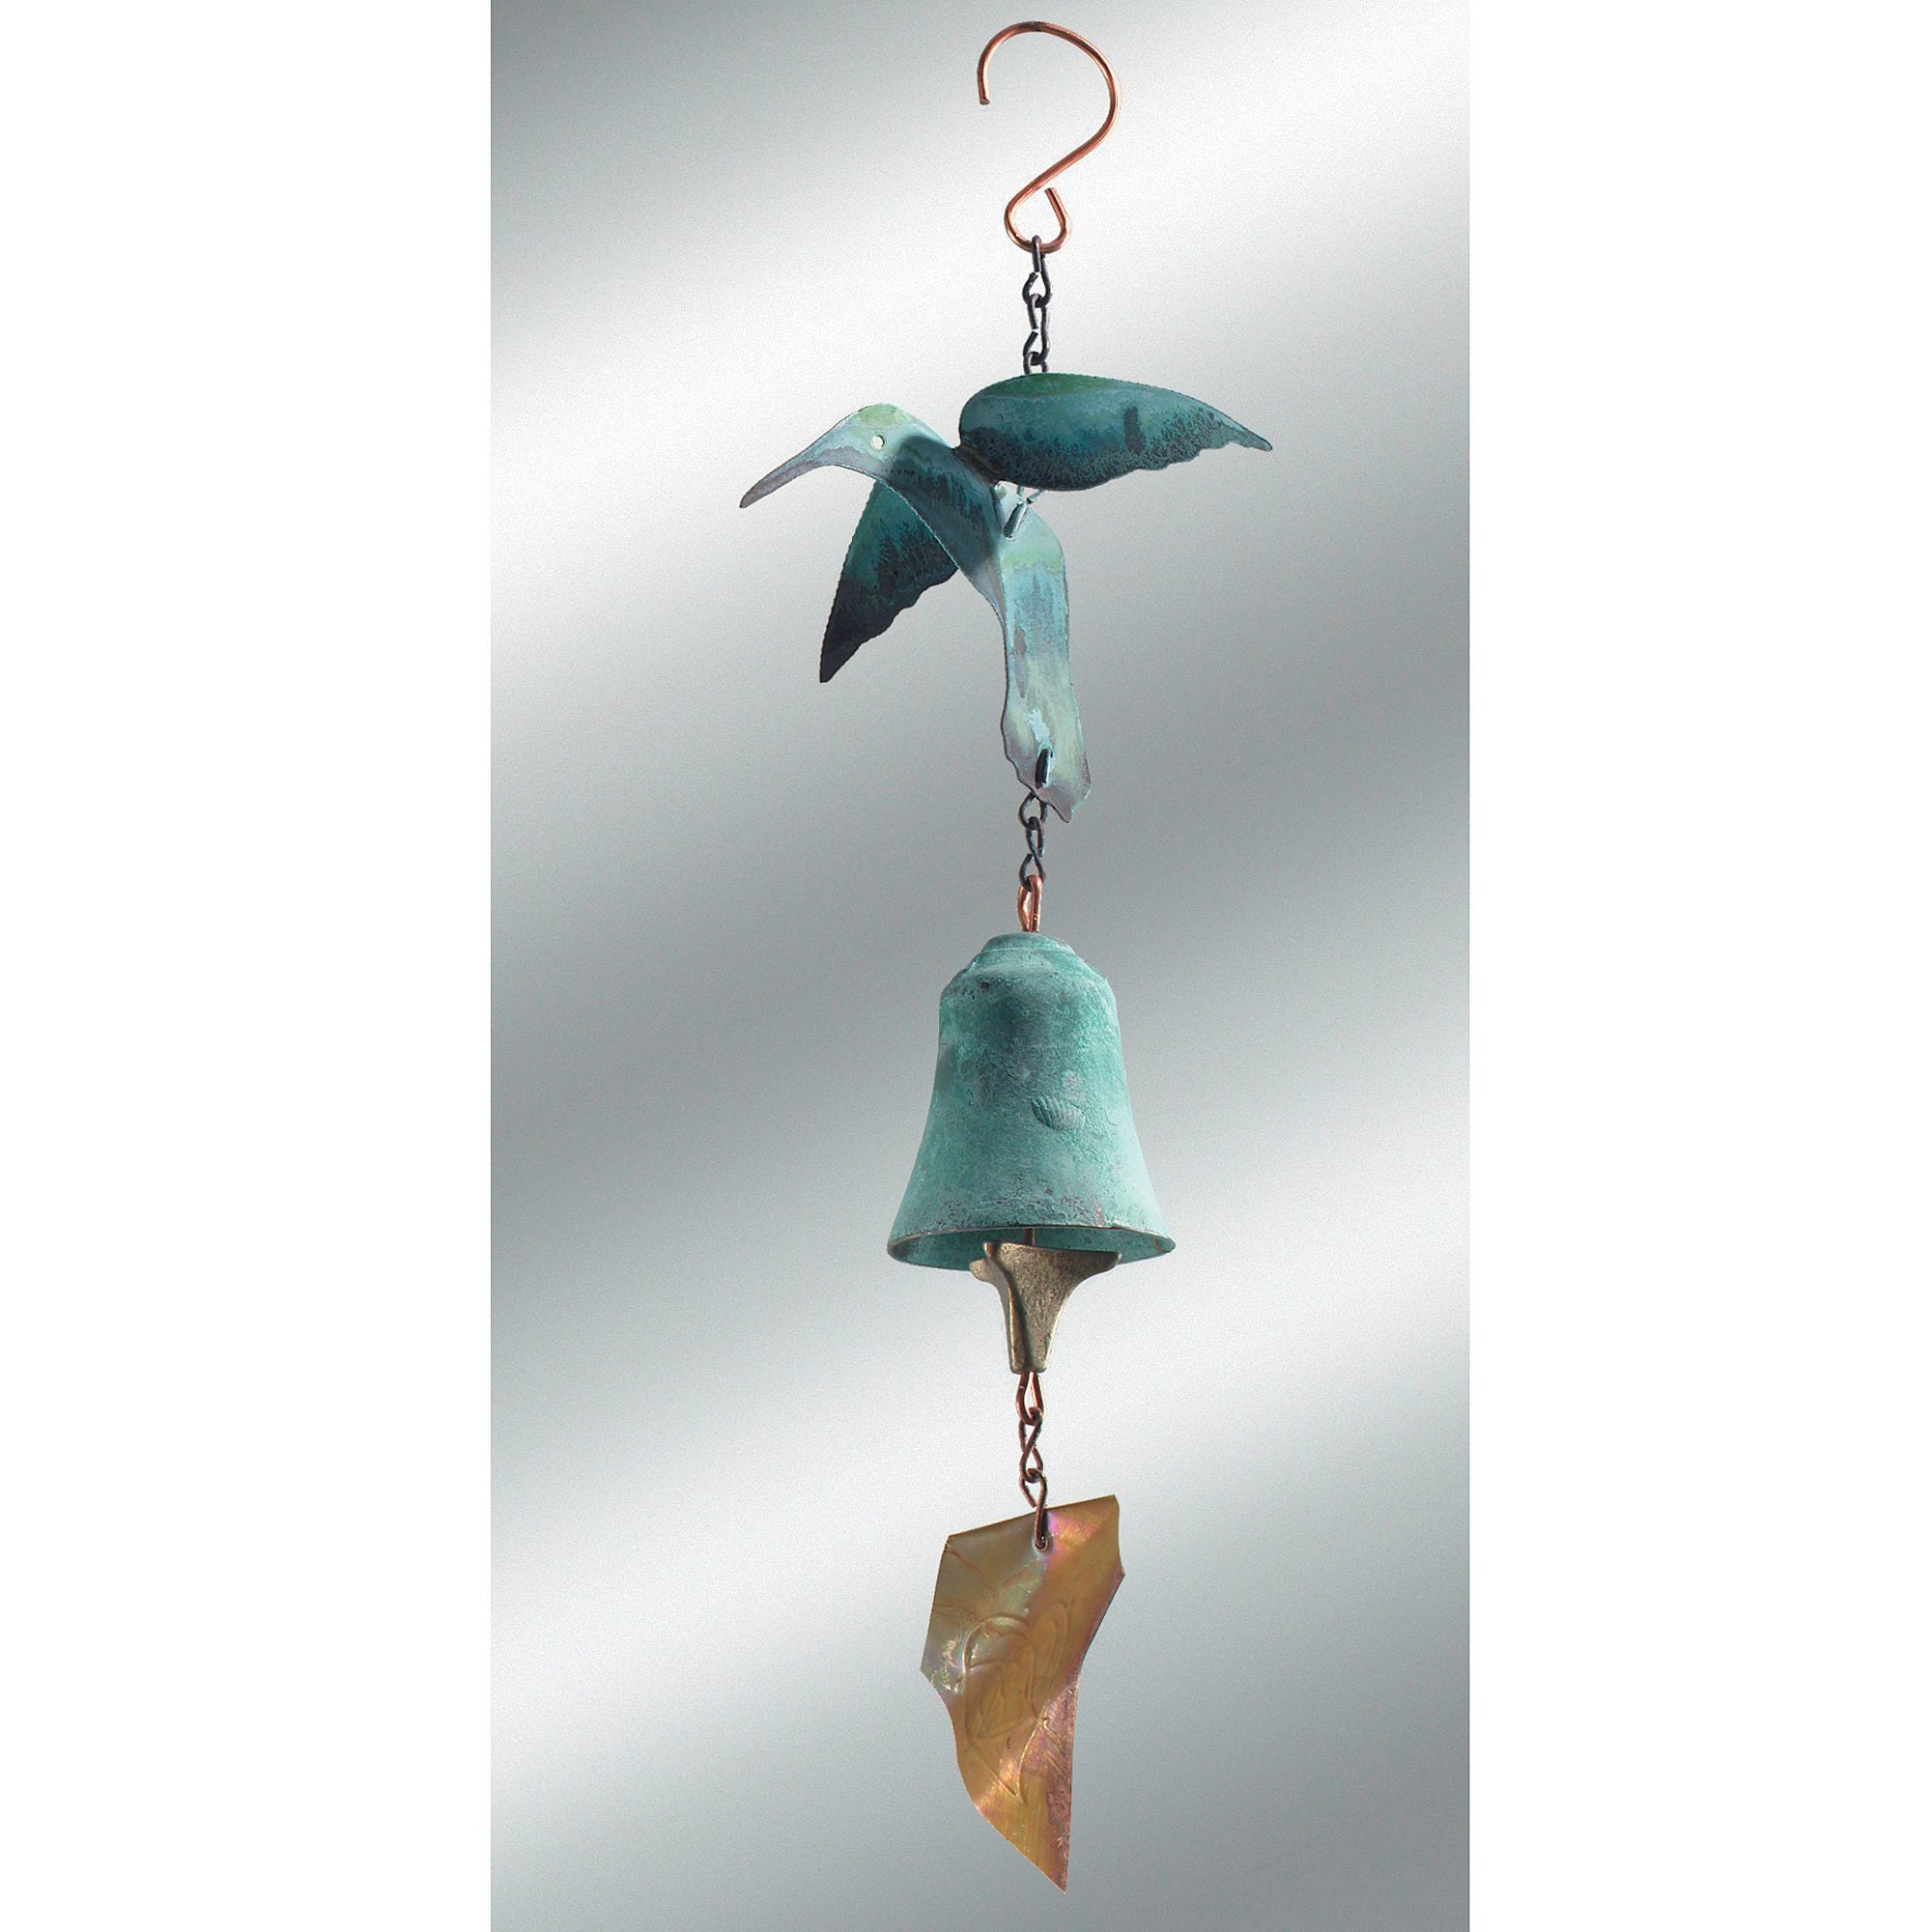 Rattle Bell with Bird Motif (Campana de cascabeles con motivo de